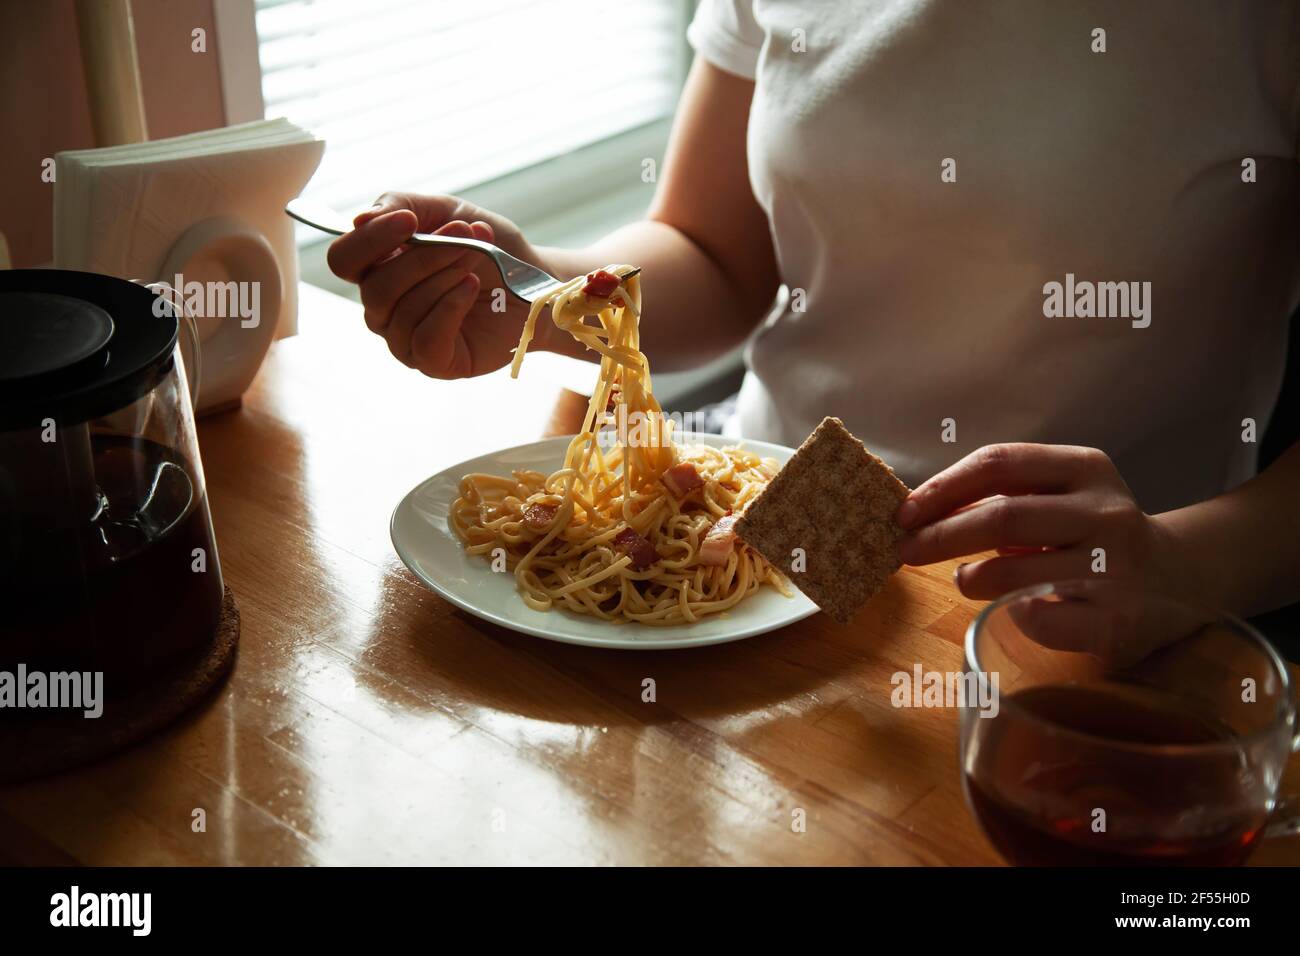 Ein Mädchen in hausgemachten Kleidern essen italienische Spaghetti, Carbonara am Tisch. Hausgemachtes Mittagessen, Hände mit einem Gericht Nahaufnahme Stockfoto